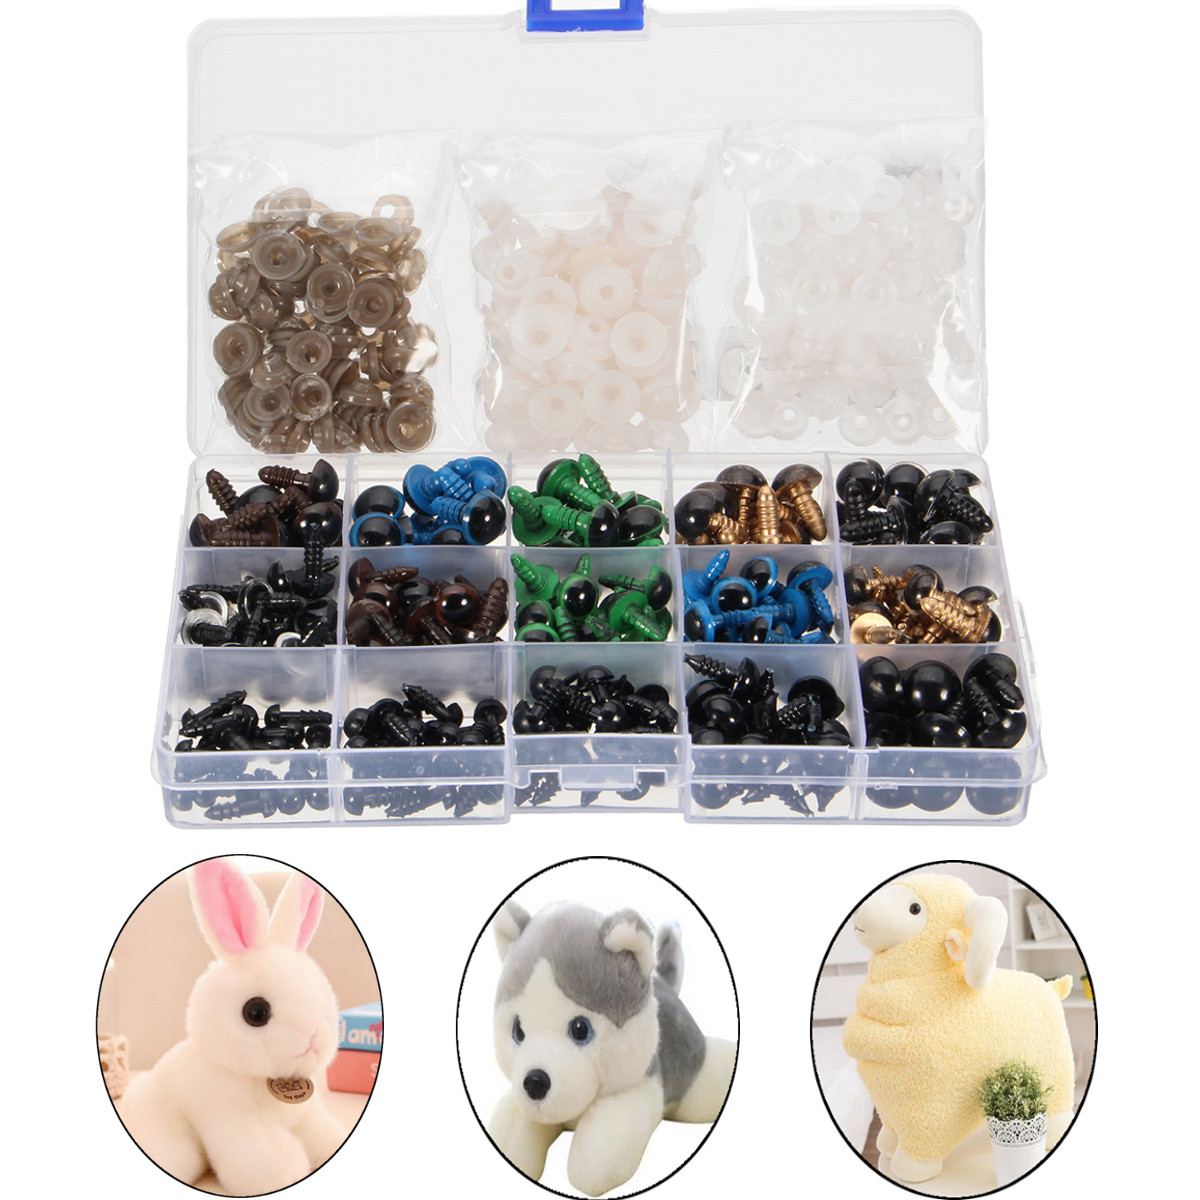 

264Pcs 6-12mm Black Colorful Thread Eyes For Teddy Bear Doll Felting Animals Toy Crafts DIY Accessories